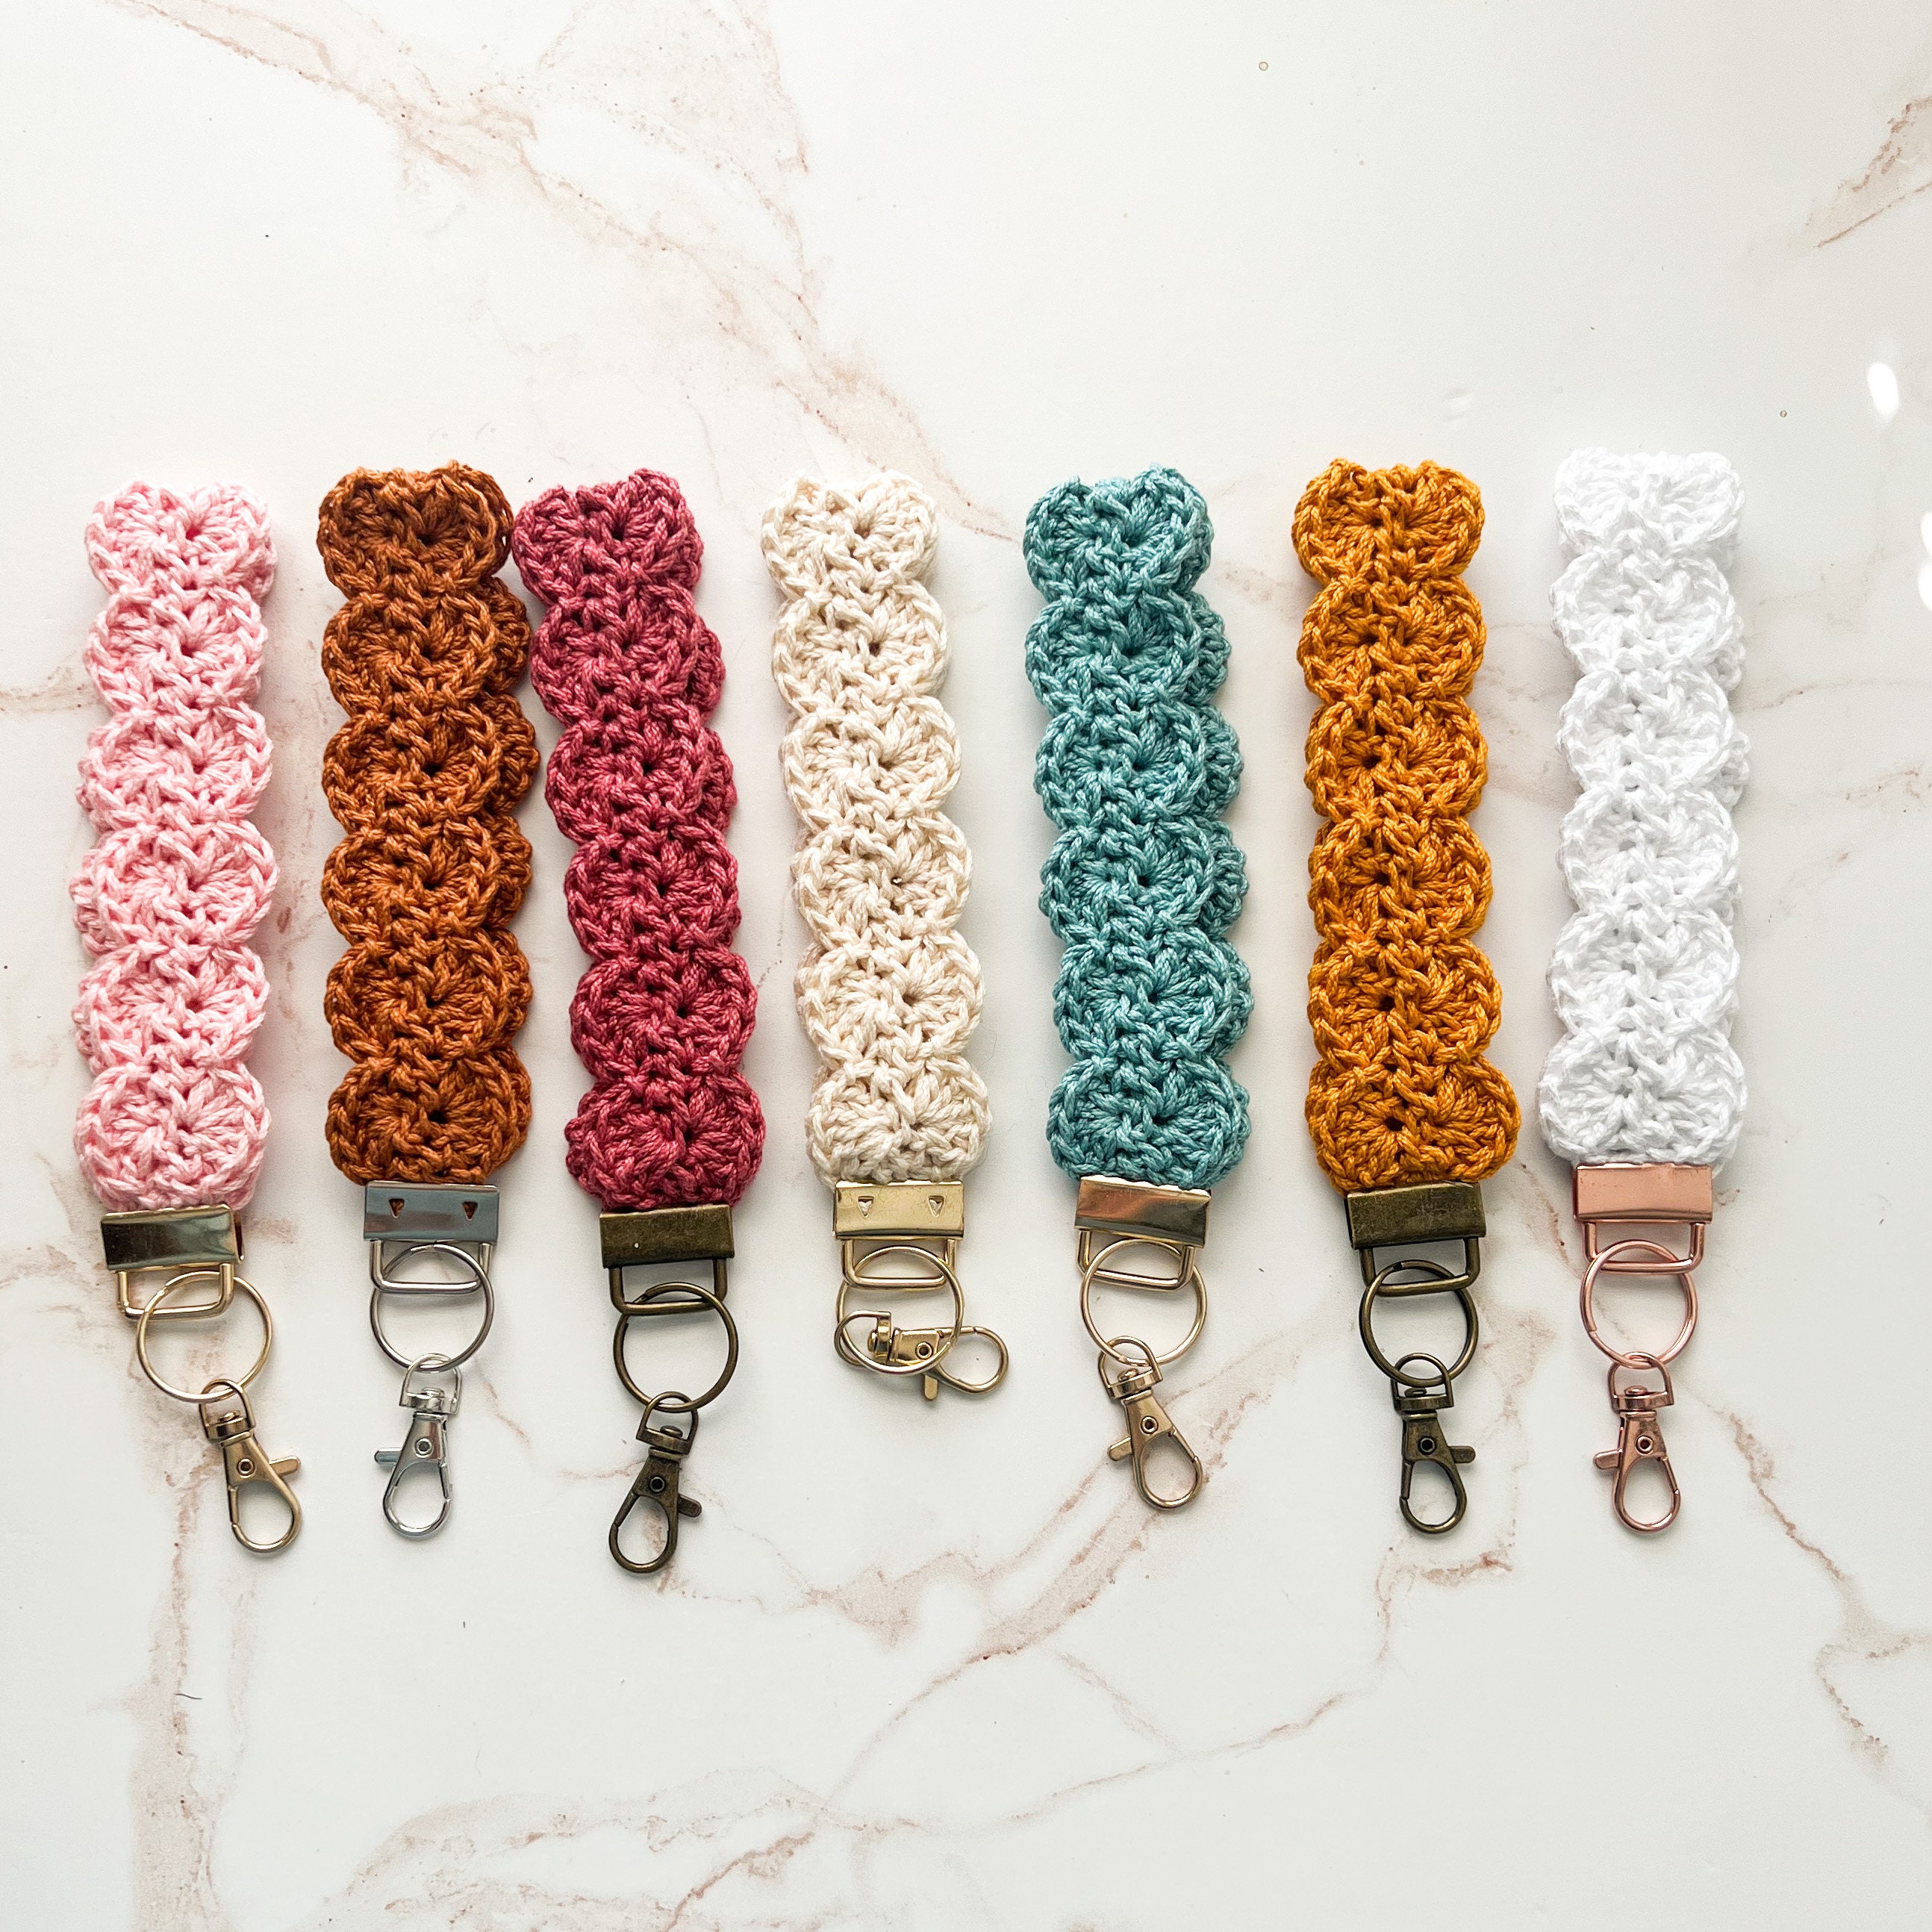 High Tide Wristlet Crochet PATTERN Keychain Clasp Fast 